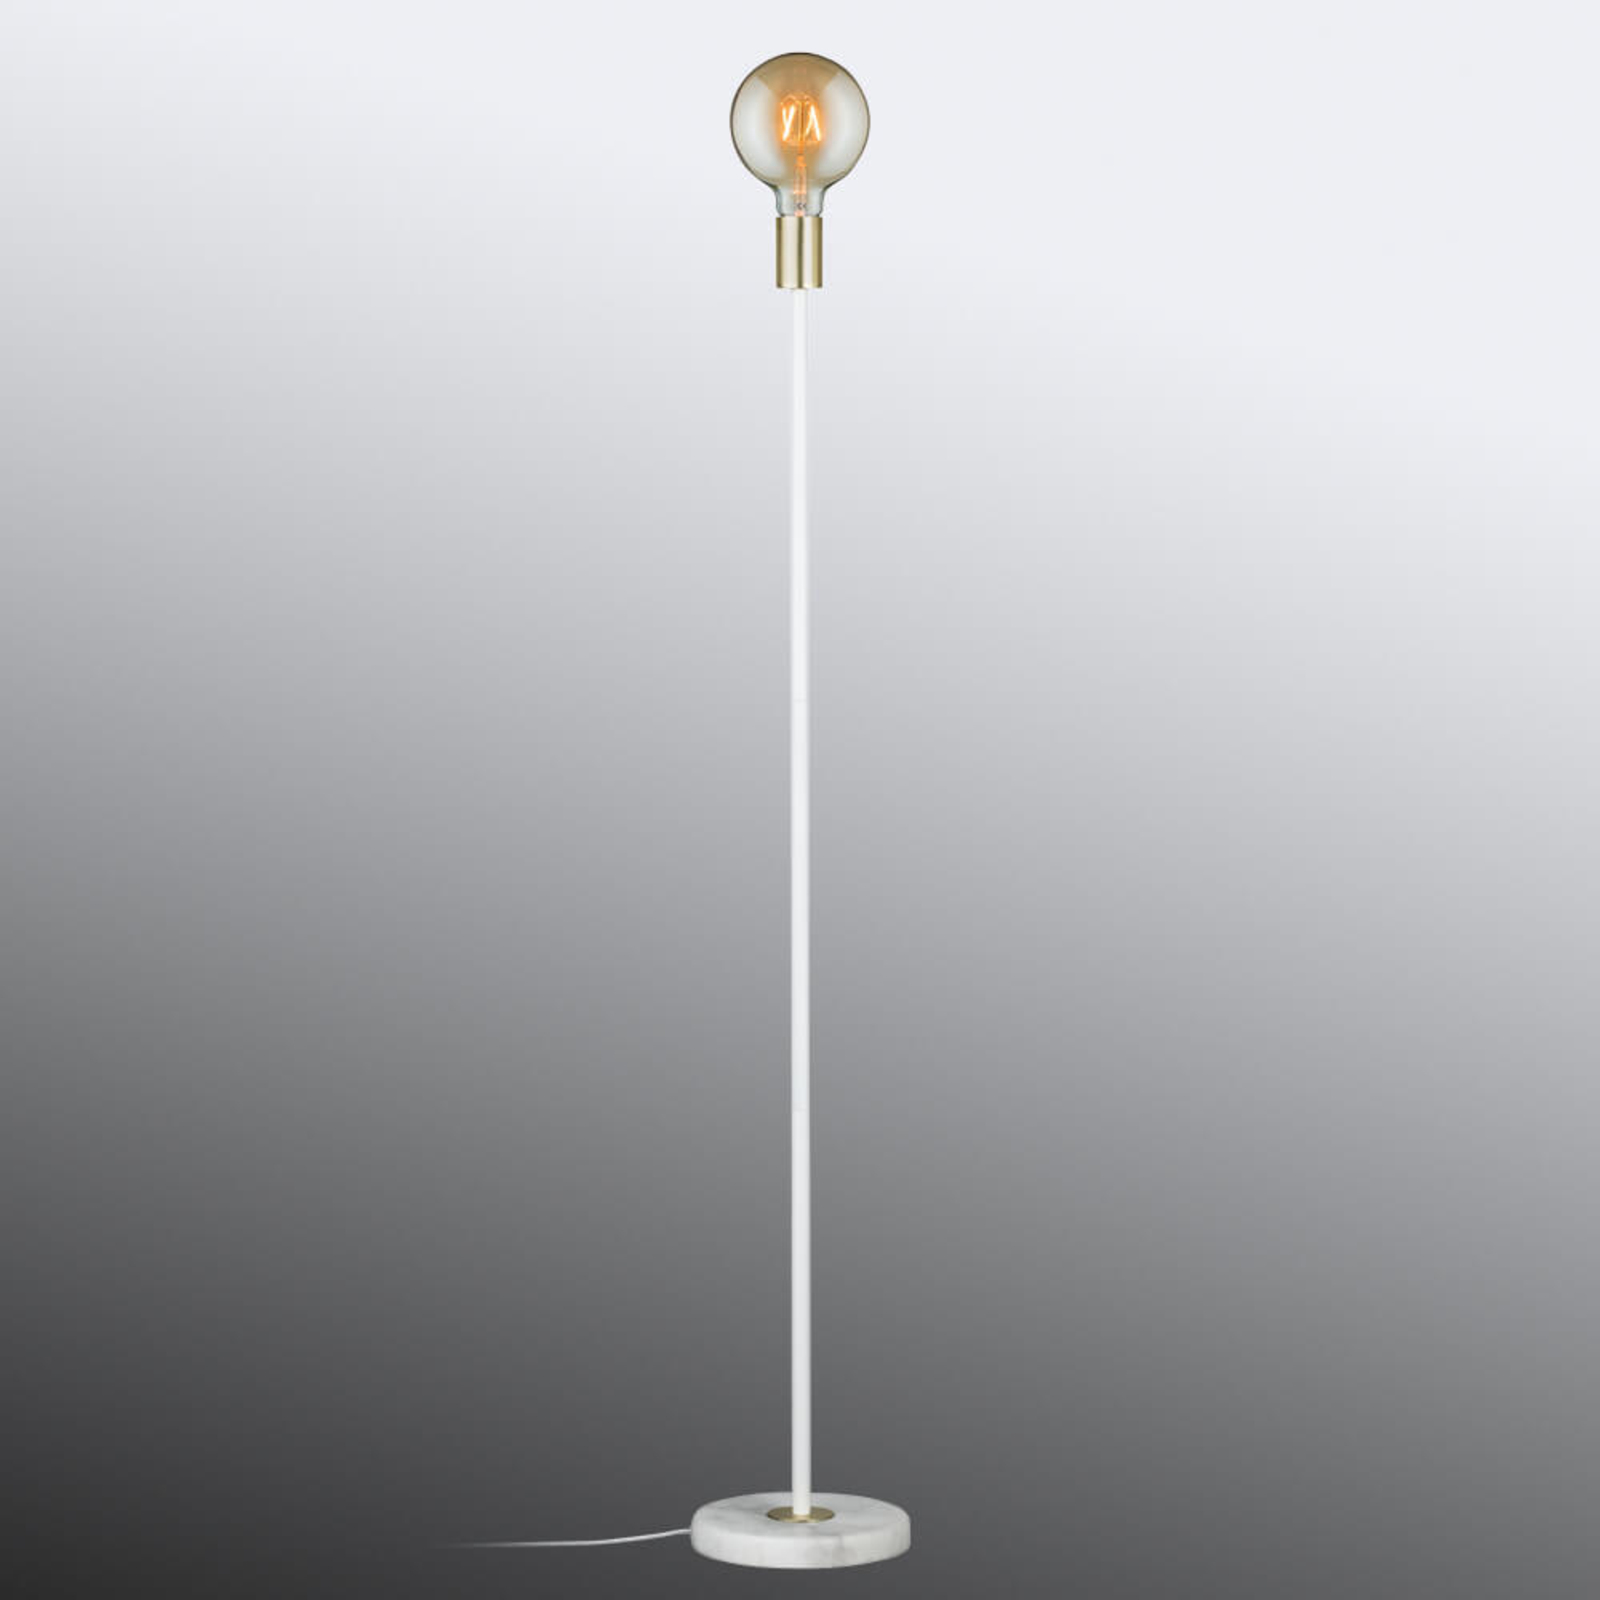 Minimalistic floor lamp Nording